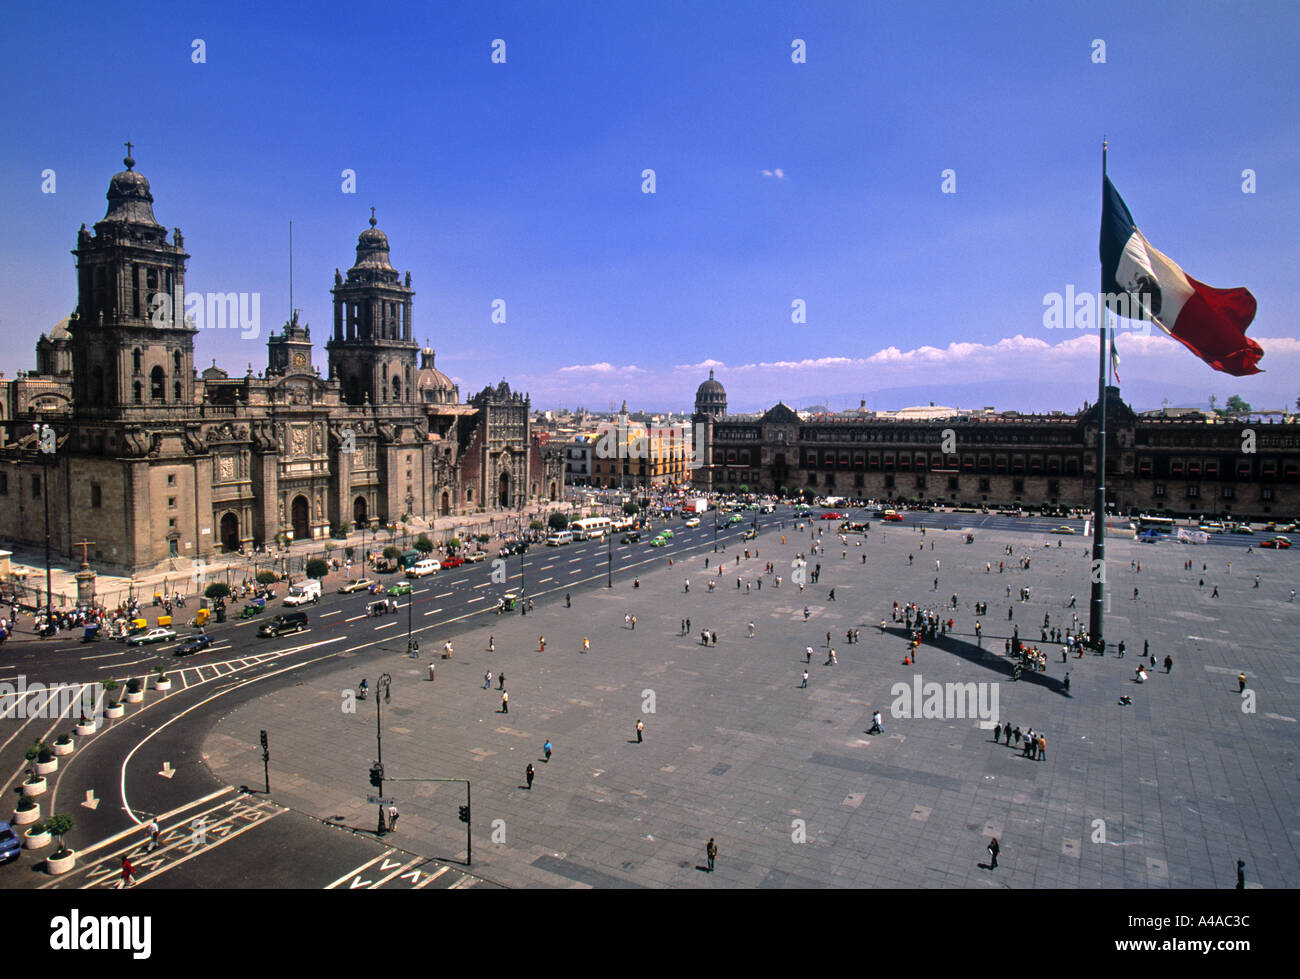 The Zocalo, Mexico City, Mexico Stock Photo